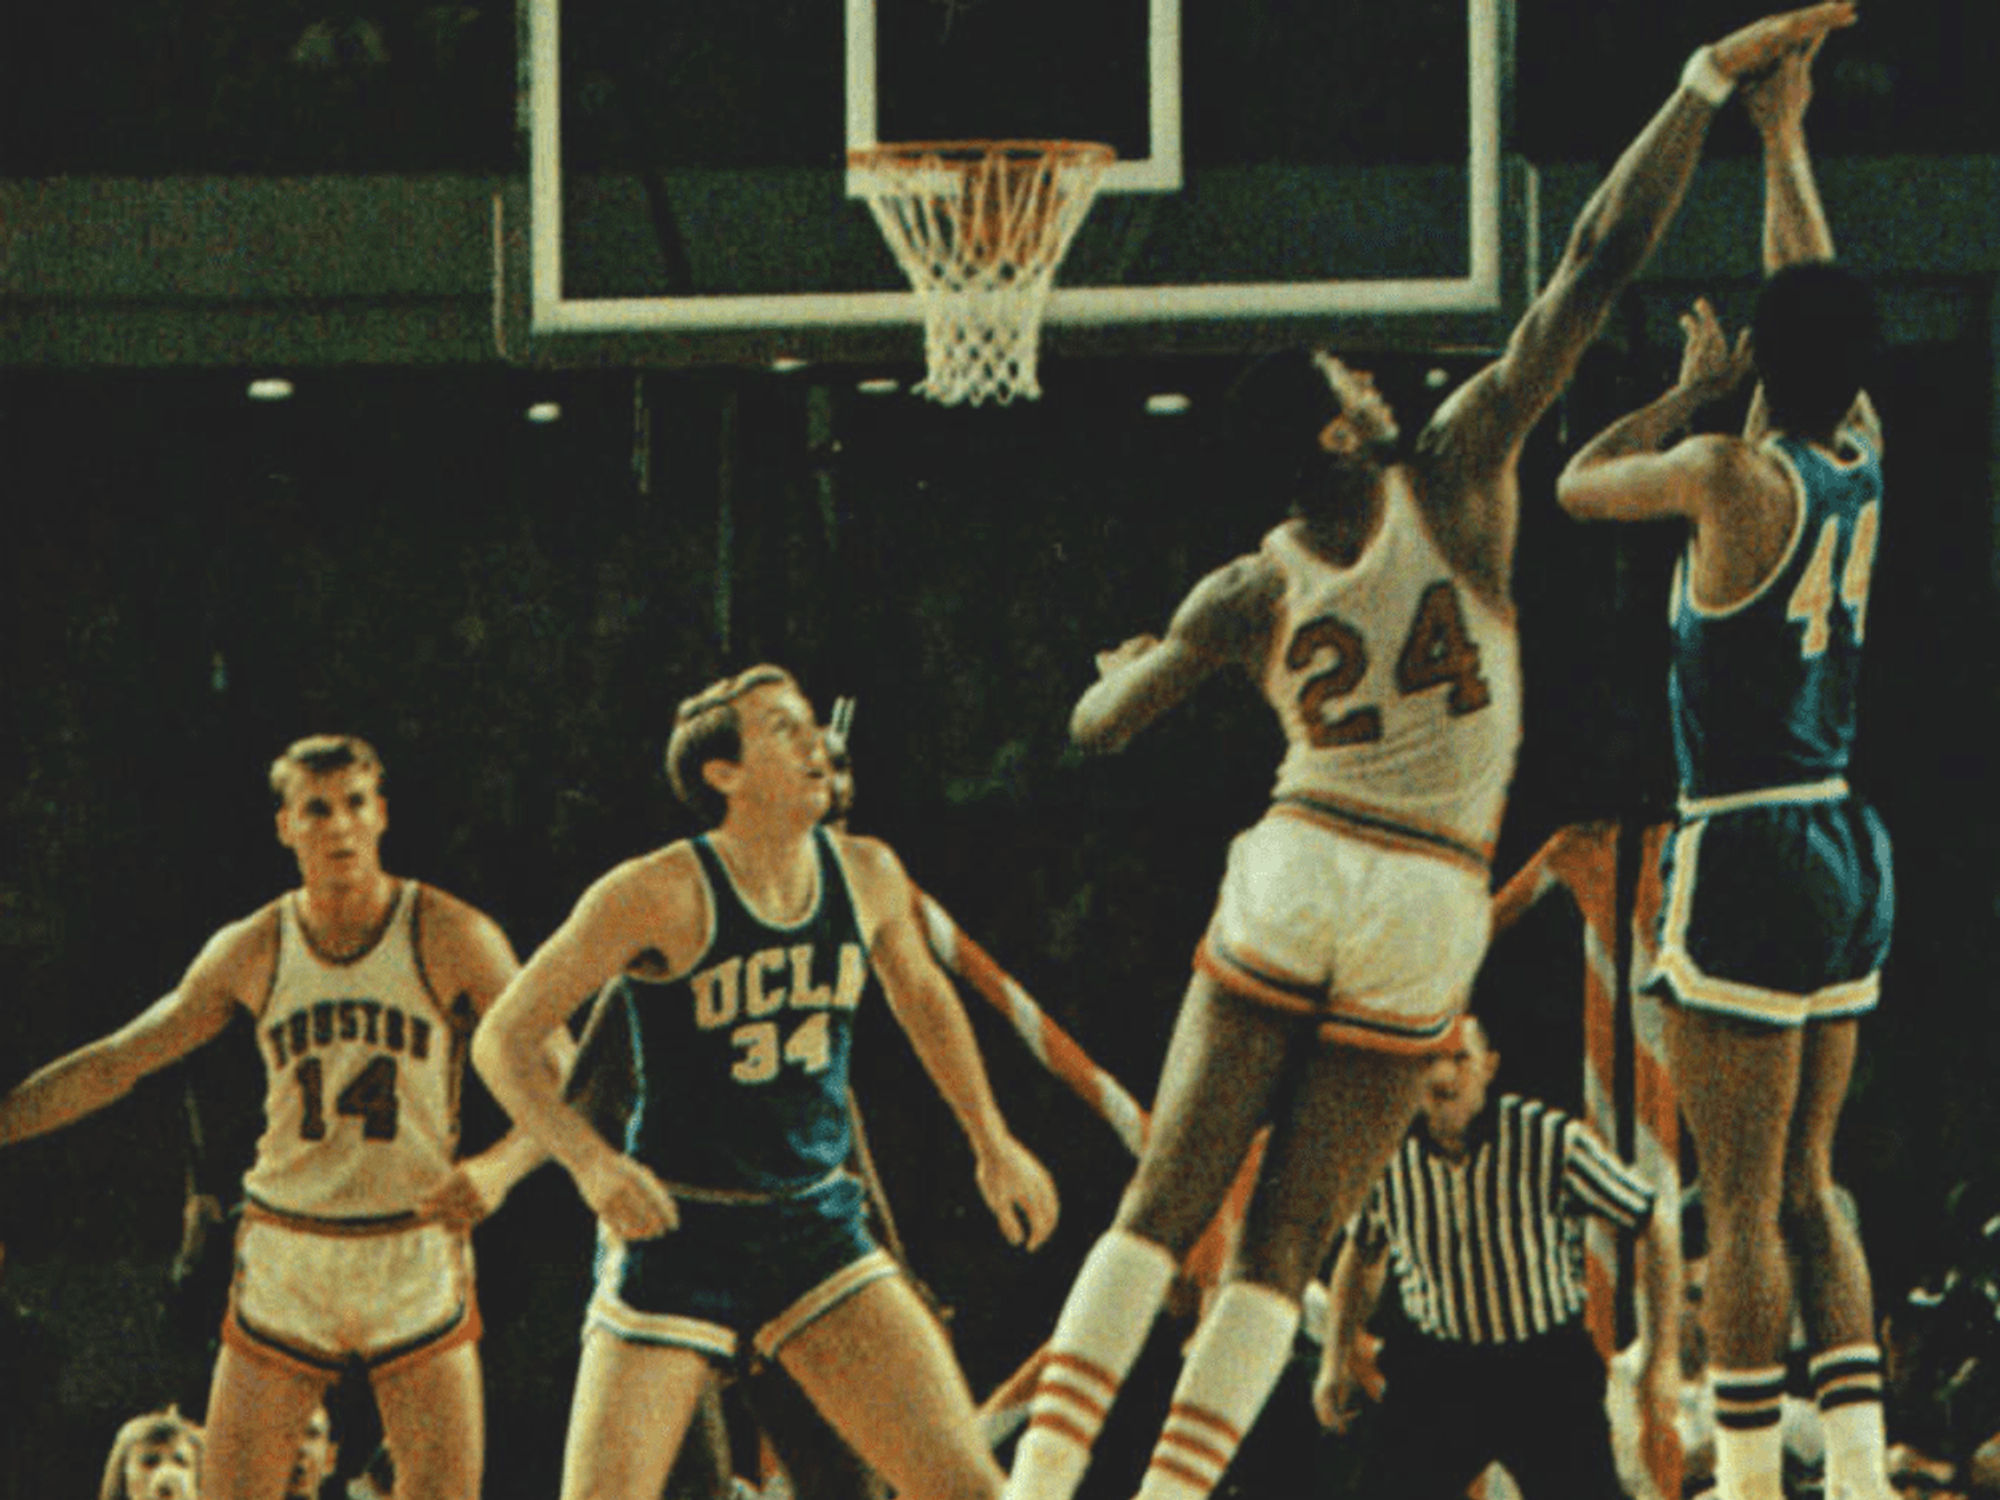 Game of the Century University of Houston, UCLA